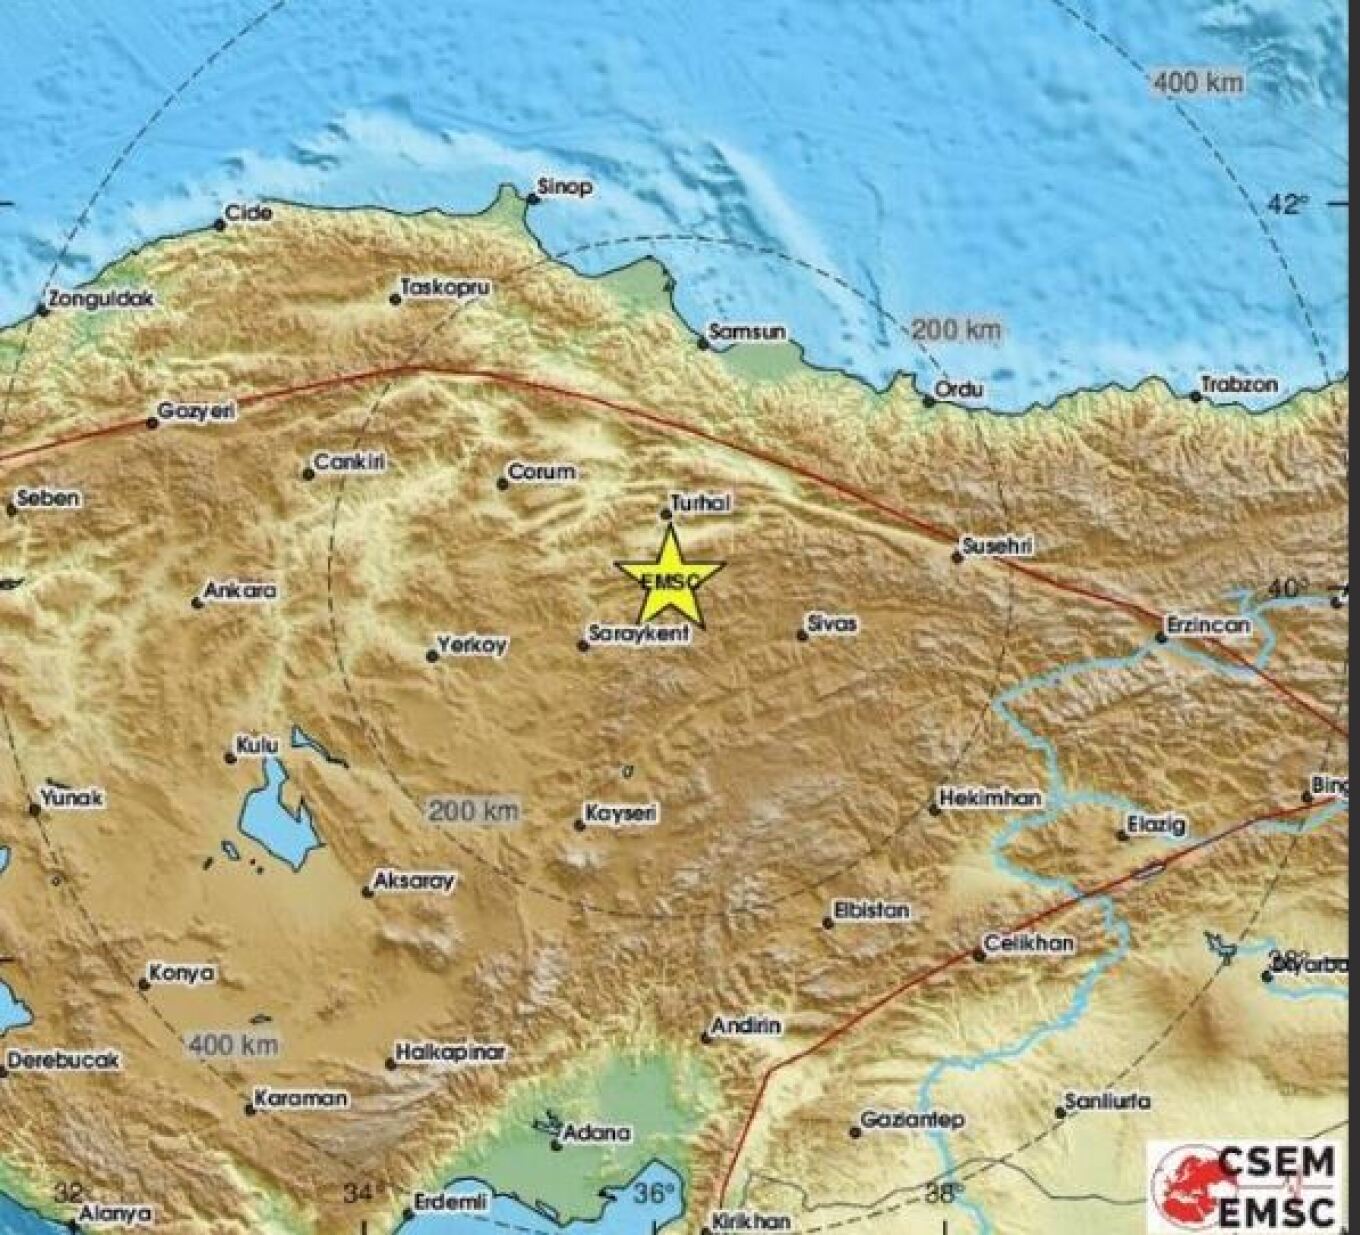 Σεισμός 5,6 βαθμών της κλίμακας Ρίχτερ ταρακούνησε το απόγευμα την κεντρική Τουρκία, κοντά στην Άγκυρα. Το επίκεντρο της σεισμικής δόνησης εντοπίζεται περίπου 8 χιλιόμετρα βορειοδυτικά της Τοκάτης και το εστιακό βάθος υπολογίζεται σε έξι χιλιόμετρα. Ο υπουργός Εσωτερικών της Τουρκίας, Αλί Γερλίκαγια, δήλωσε: «Ο Κυβερνήτης της Τοκάτ, η AFAD και όλες οι ομάδες των αρμόδιων αρχών ξεκίνησαν επιτόπια αυτοψία στην περιοχή, όπου σημειώθηκε ο σεισμός των 5,6 Ρίχτερ, στο Σουλουσαράι της επαρχίας Τοκάτ. Παρακολουθούμ